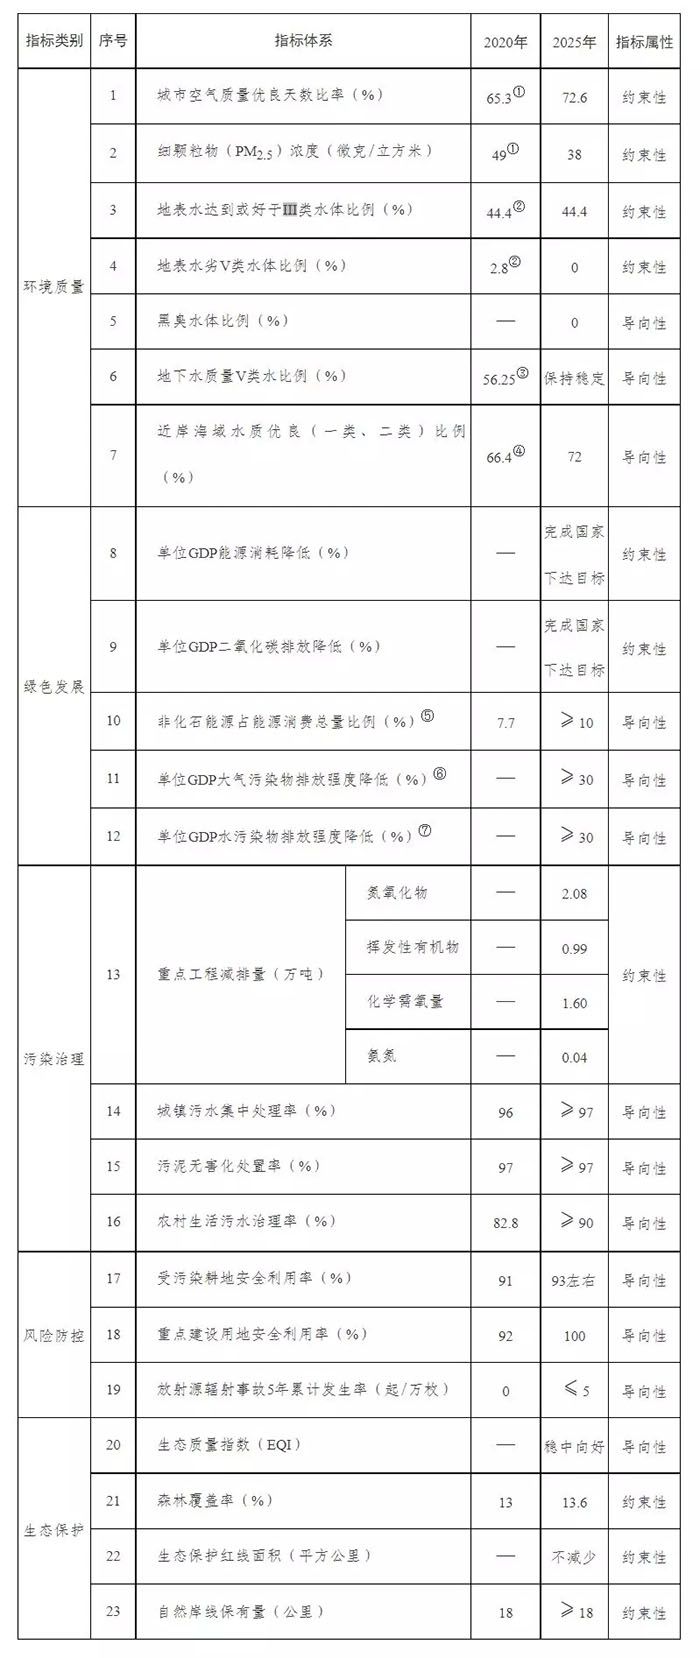 天津市人民政府办公厅关于印发天津市生态环境保护“十四五”规划的通知